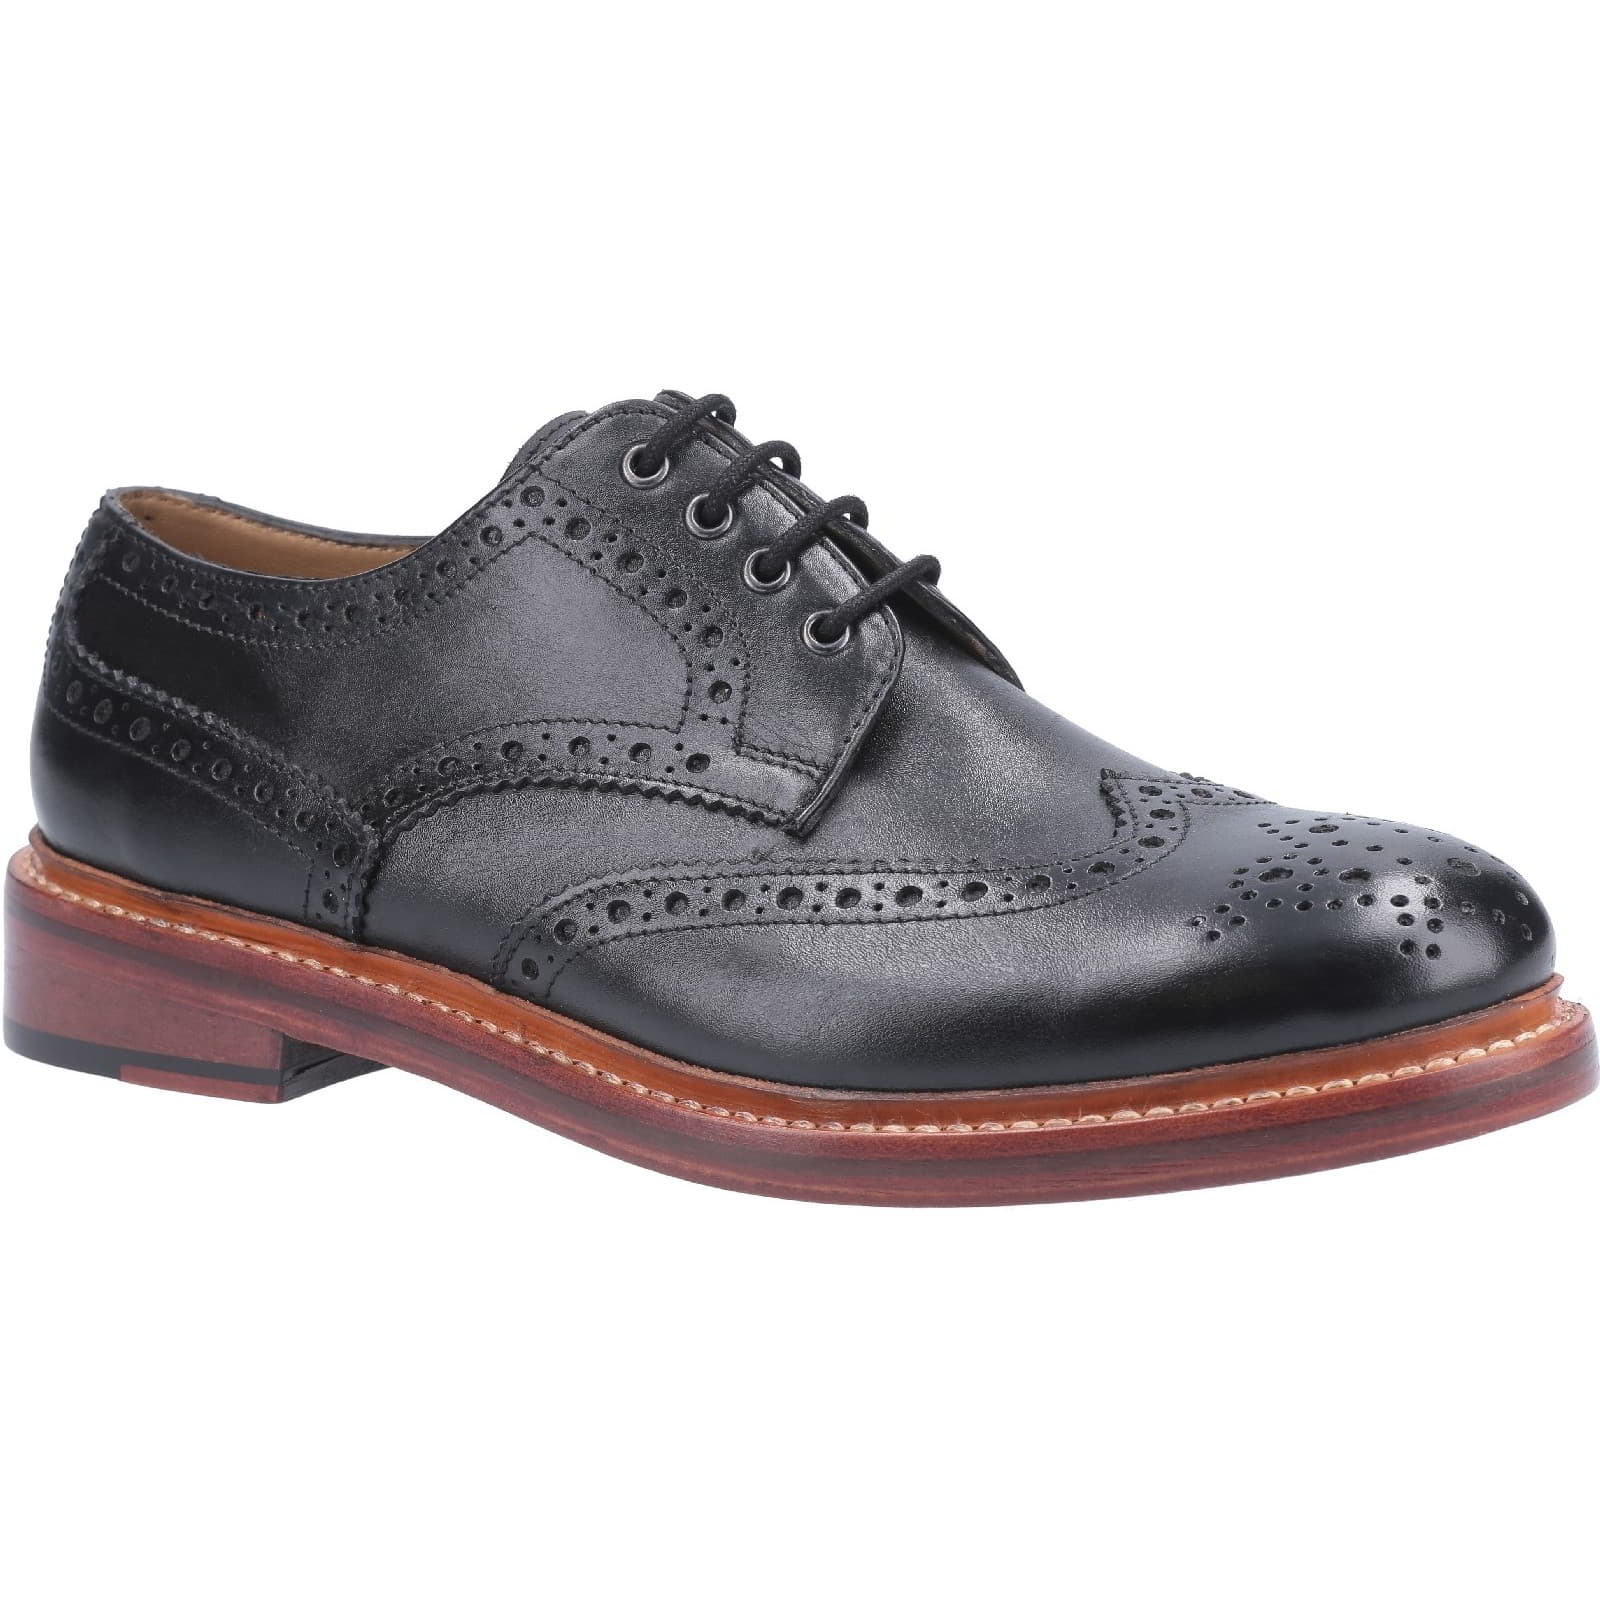 Cotswold Men's Quenington Lace Up Brogues Shoes - UK 9